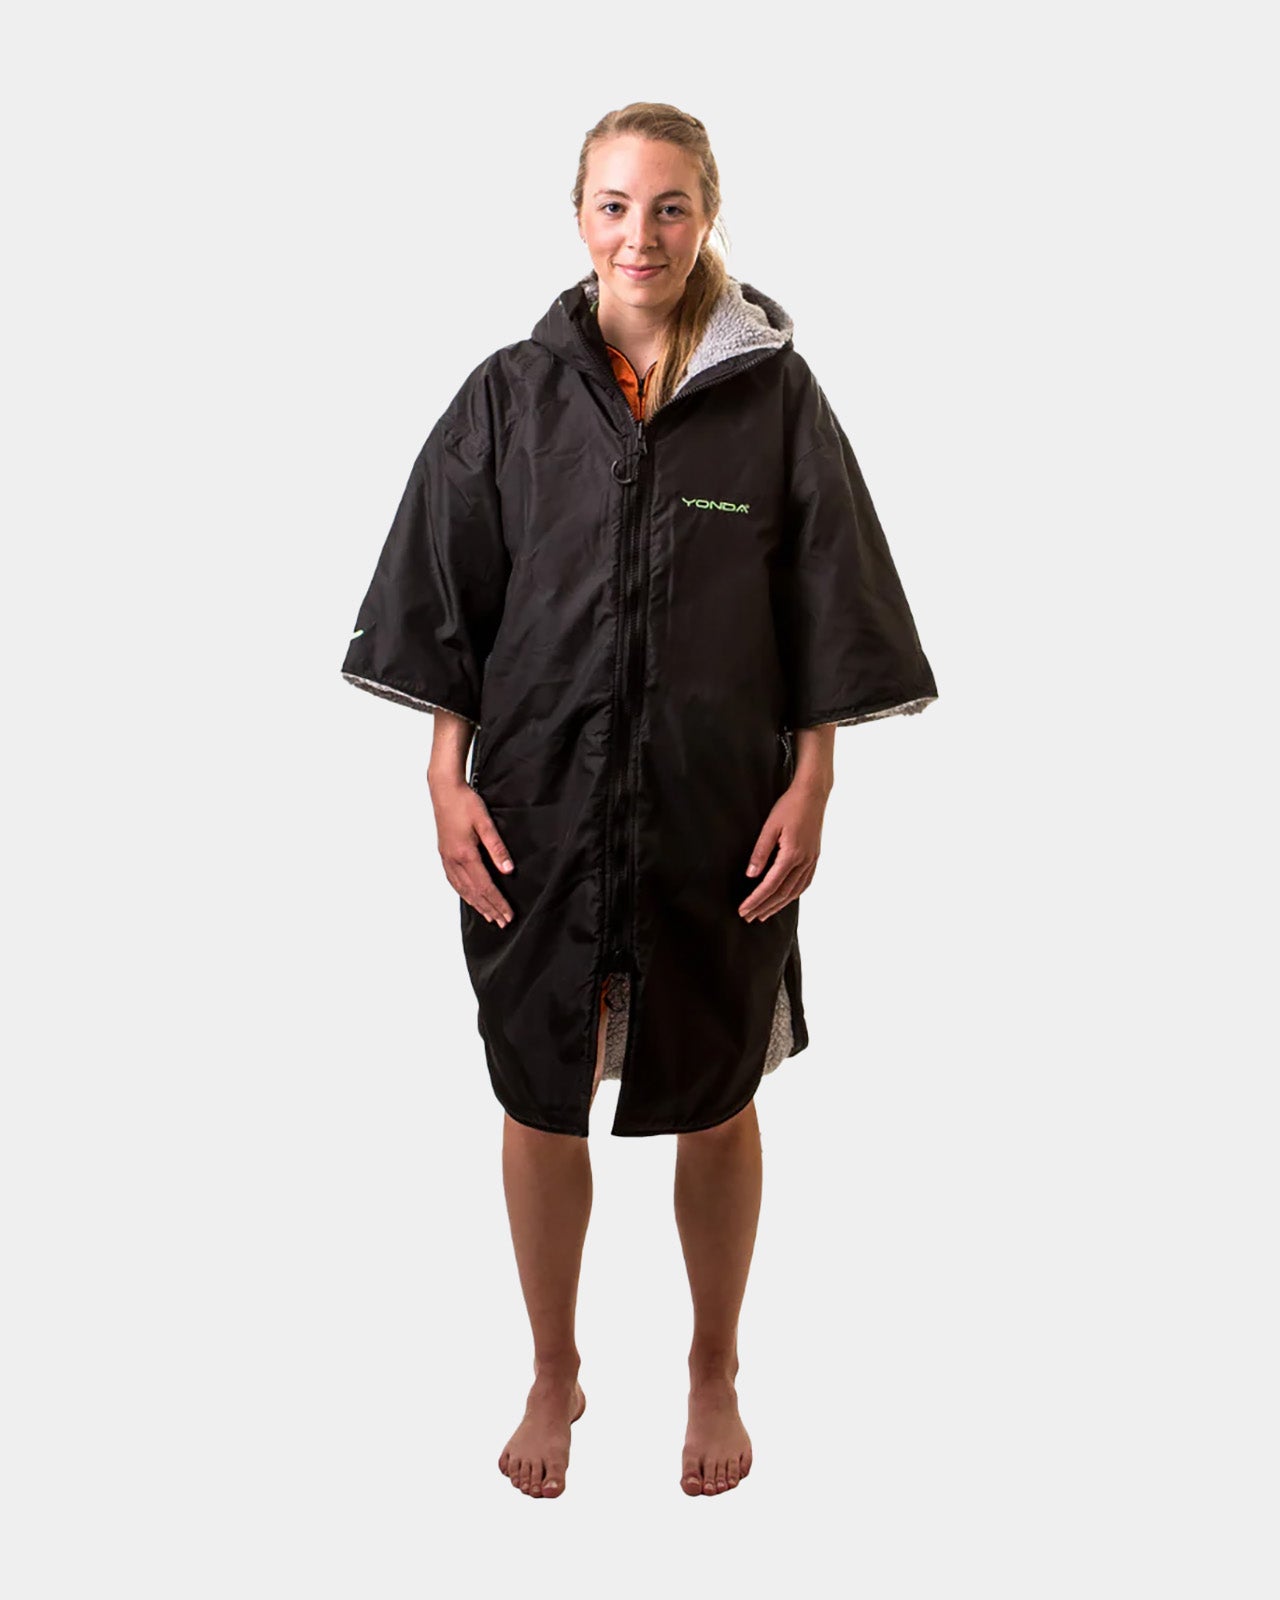 YONDA Waterproof Changing Robe - Black & Grey